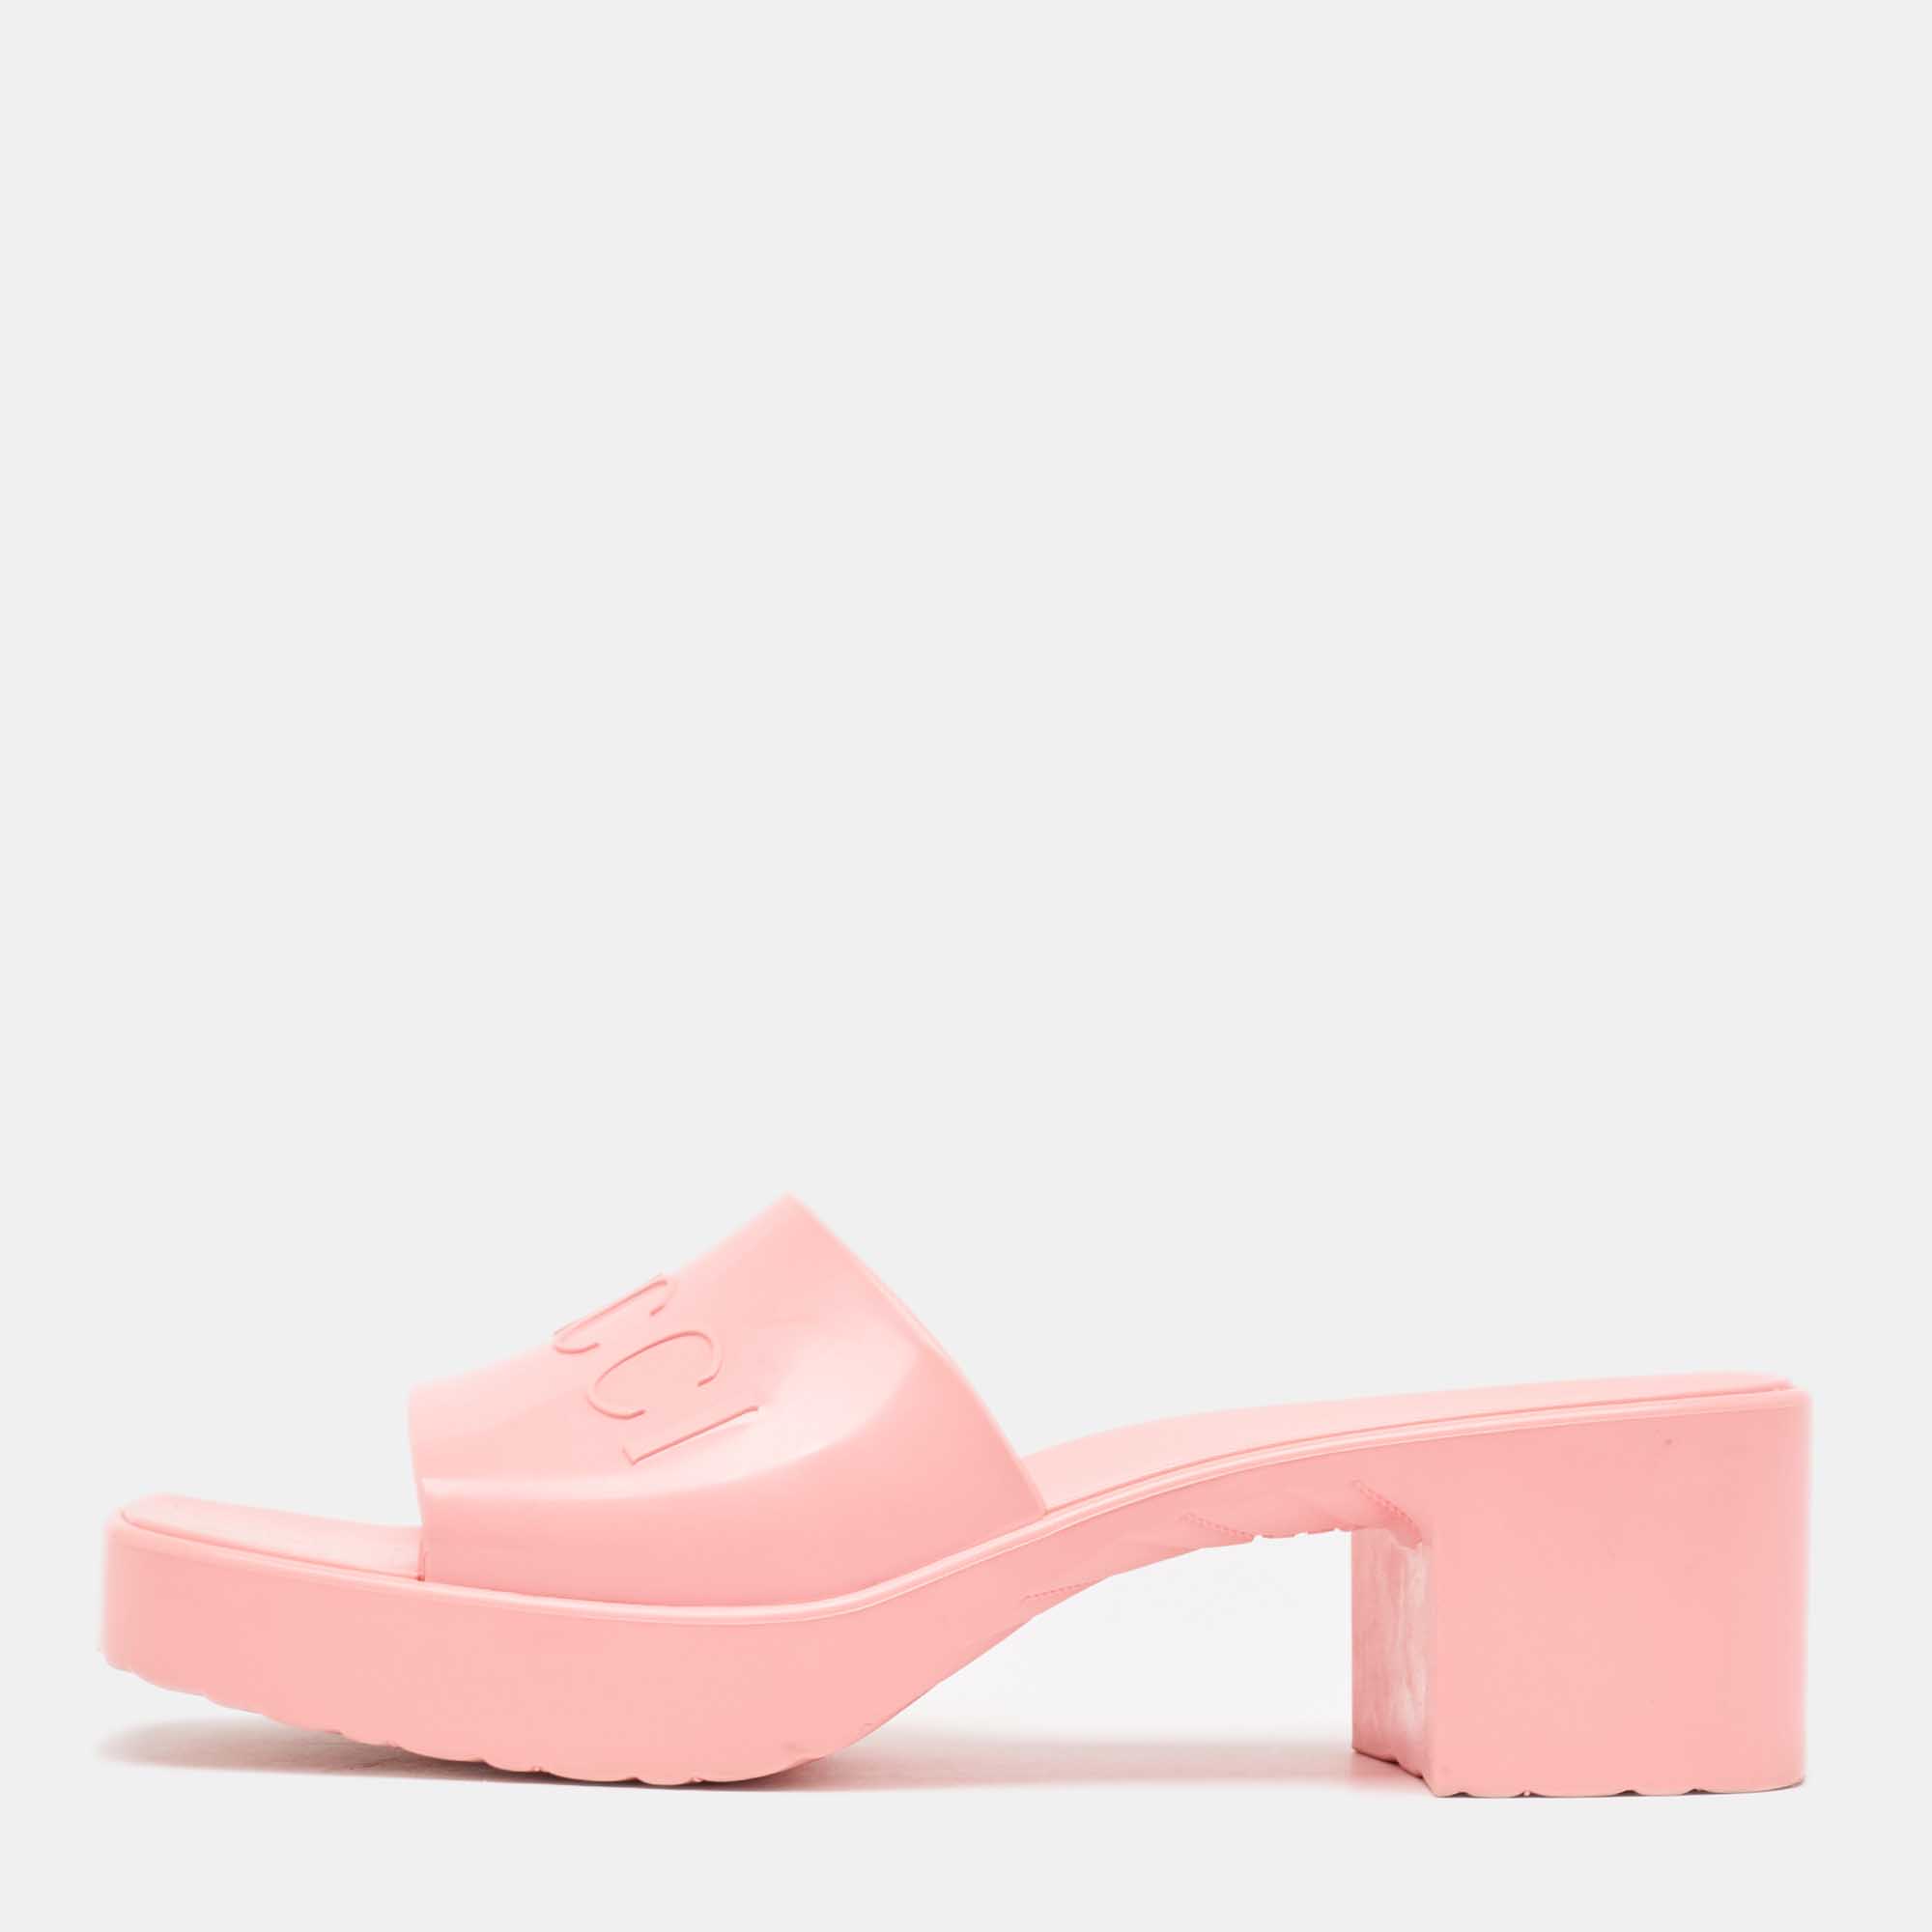 Gucci pink rubber logo platform slide sandals size 39